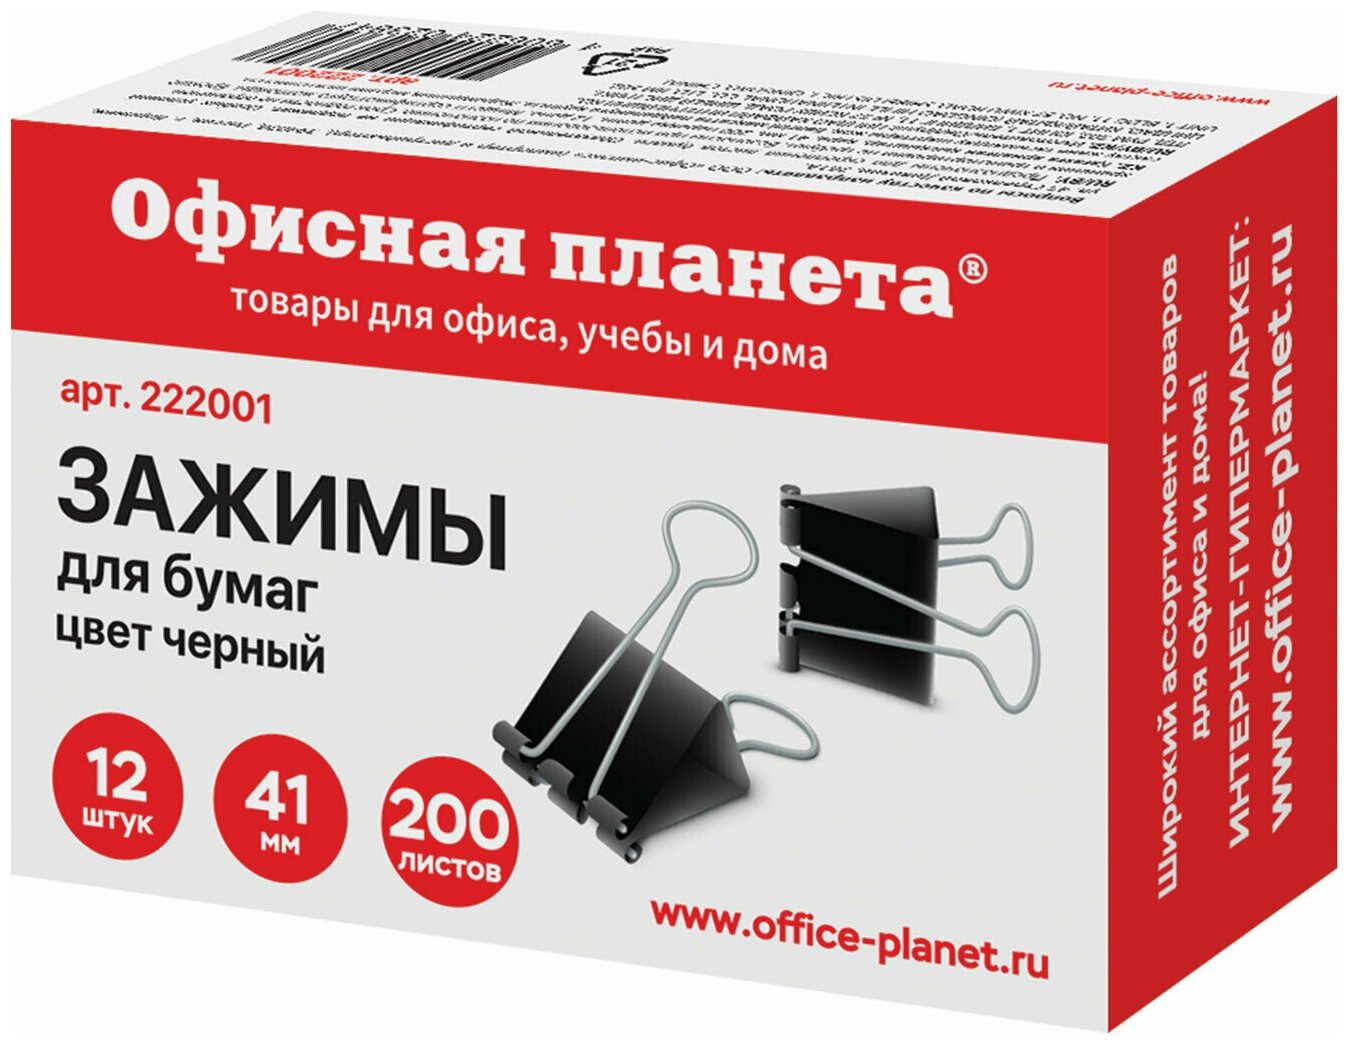 Зажимы для бумаг Офисная планета 12 штук, 41 мм, на 200 листов, черные, картонная коробка (222001)